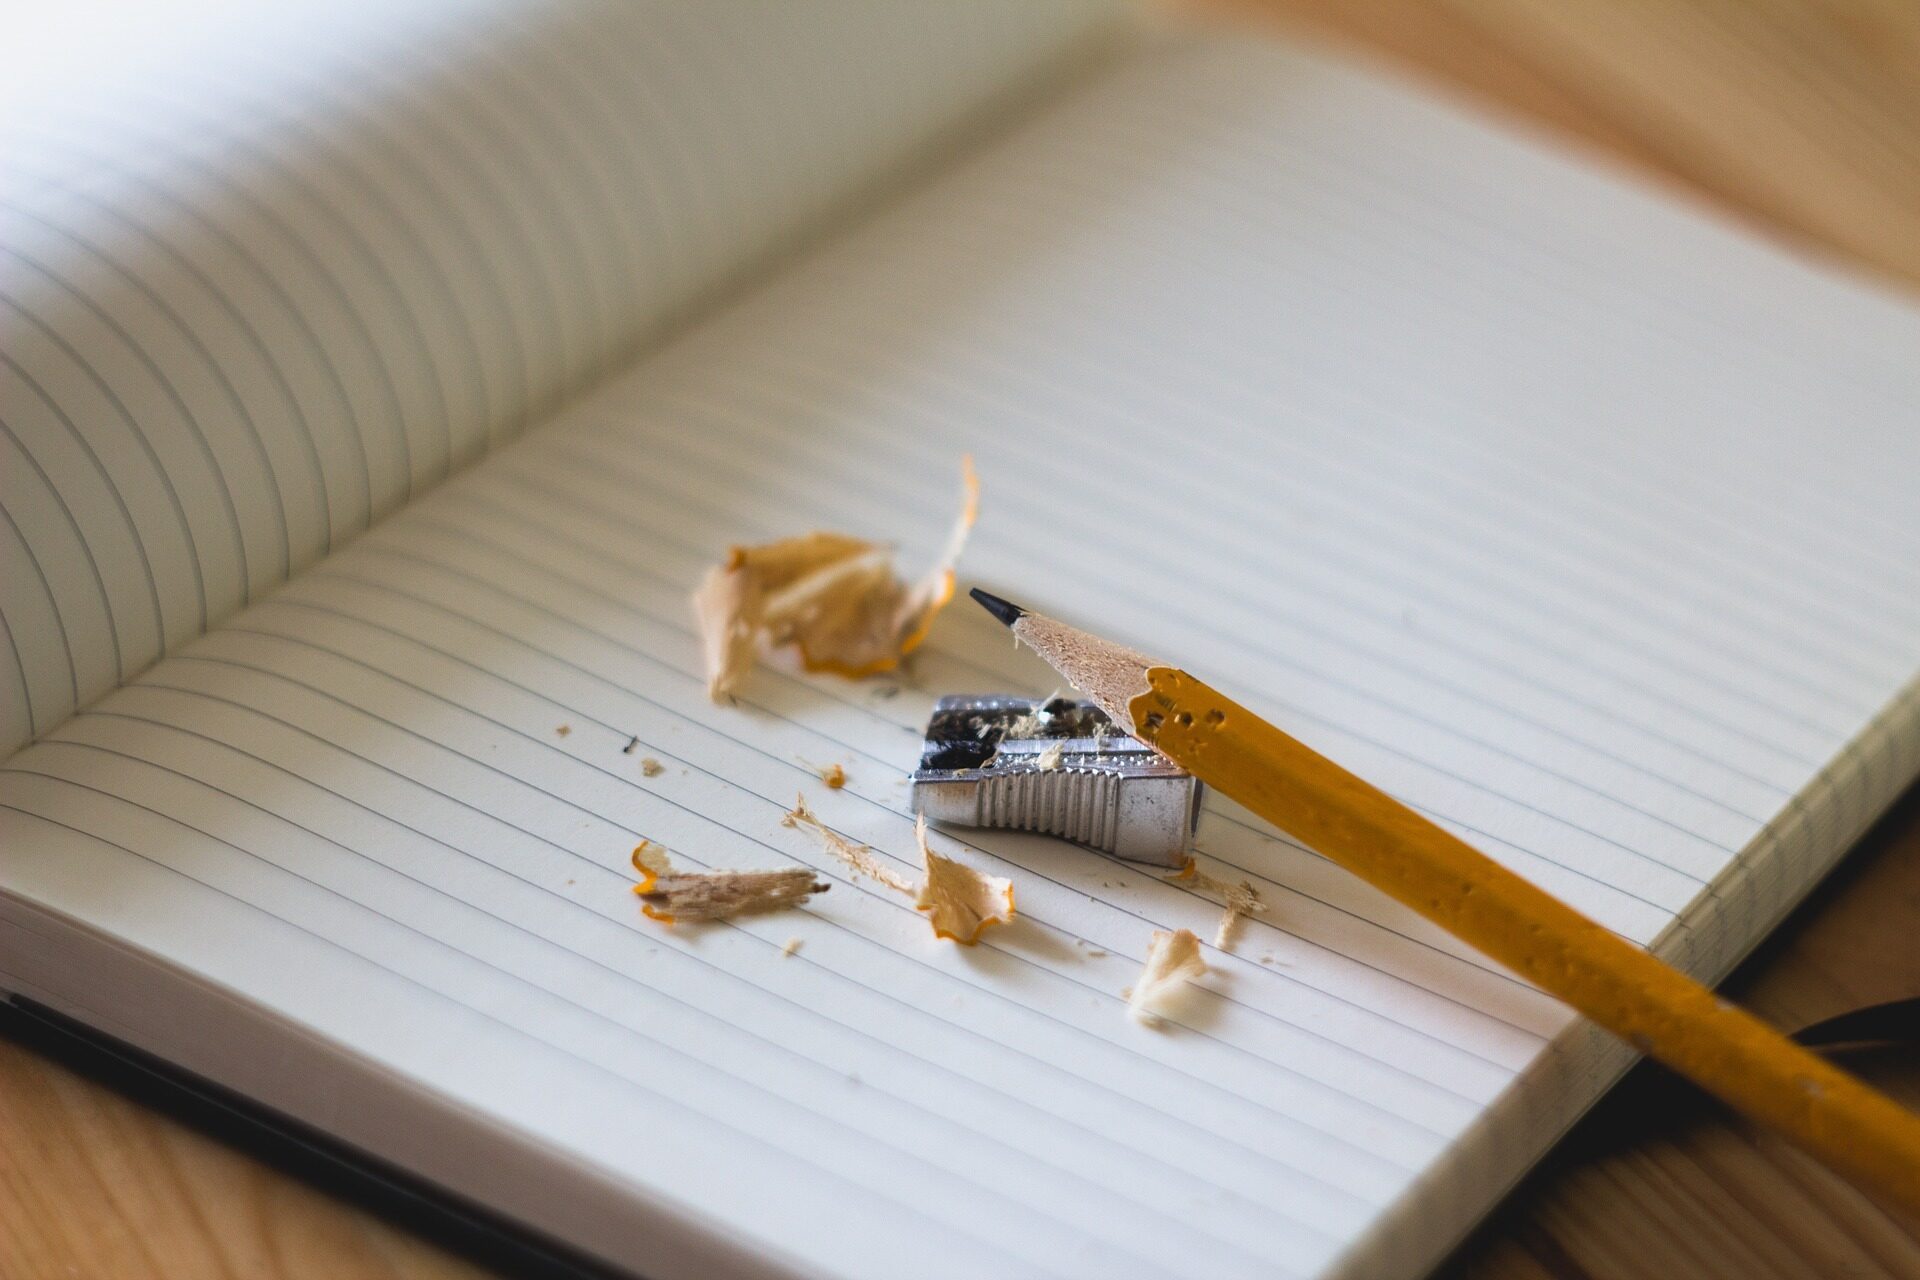 Ein einzelner Bleistift, der angespitzt wird,  liegt auf einem aufgeschlagenem leeres Blatt eines Notizbuches.